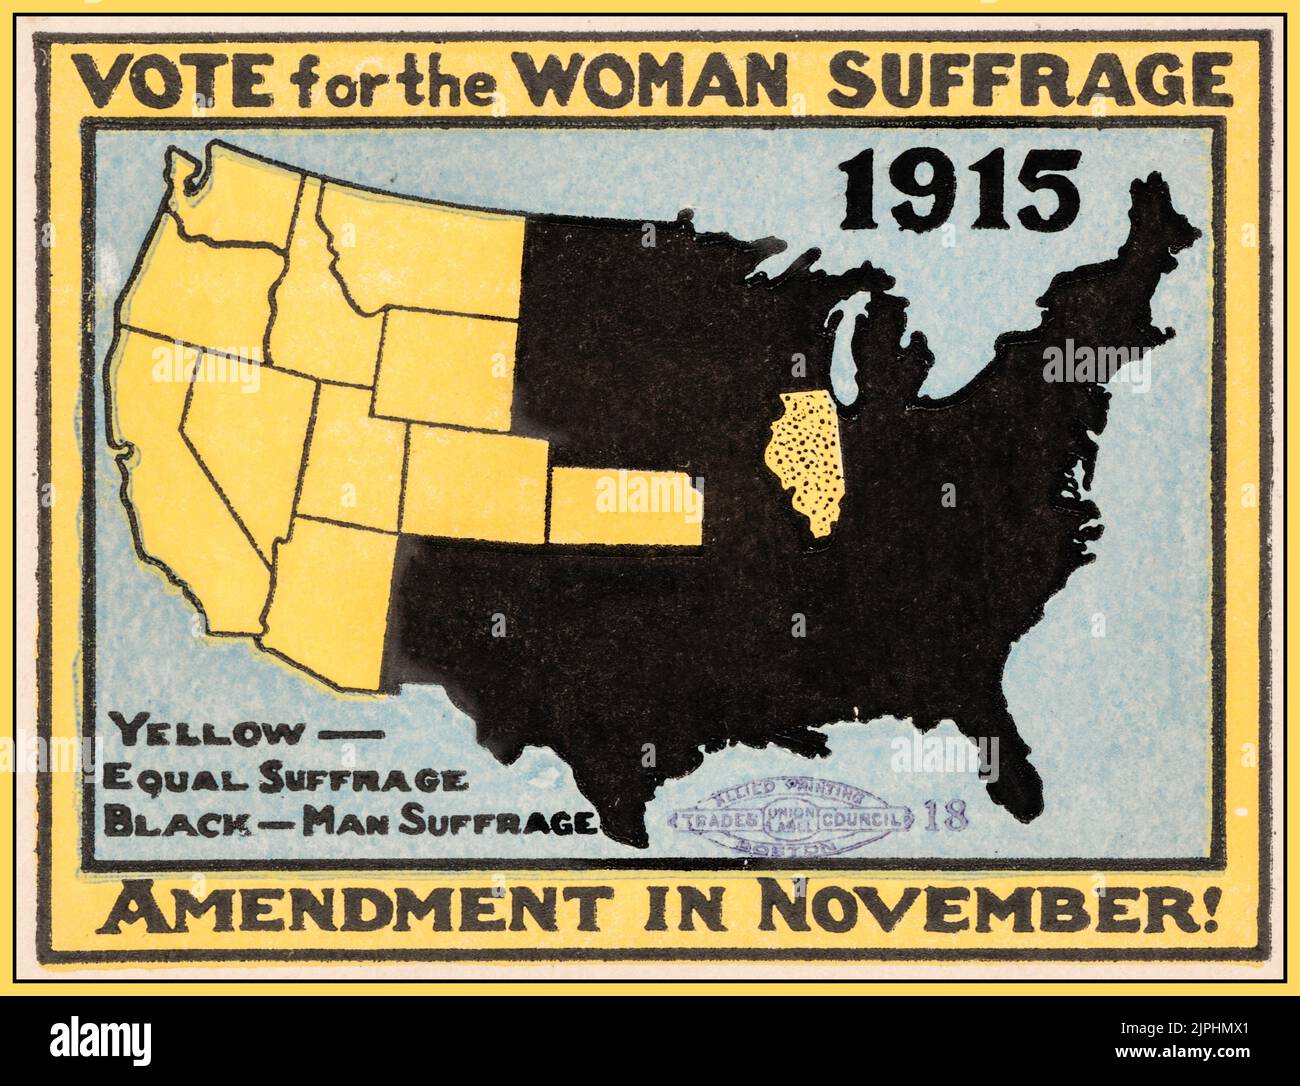 SUFFRAGE 1915 USA carte de l'affiche "vote pour la femme Amendement au suffrage en novembre" carte des Etats membres de l'Union illustrant le mouvement du suffrage et le travail électoral en cours. Banque D'Images